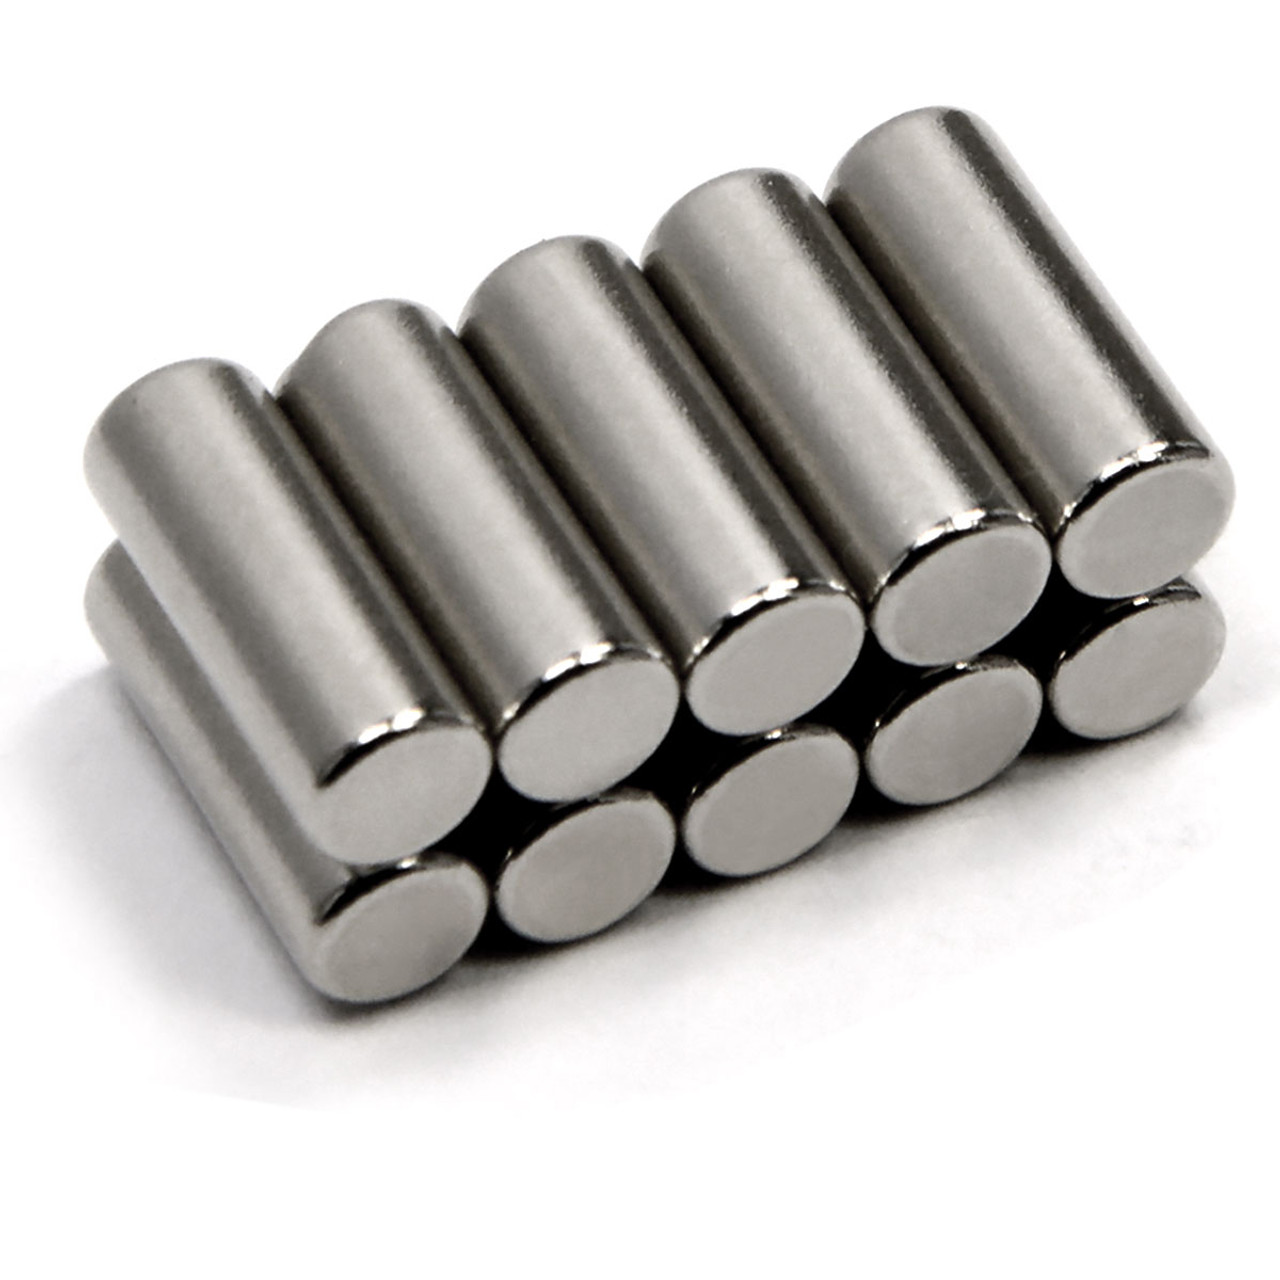 N52 cylinder magnets